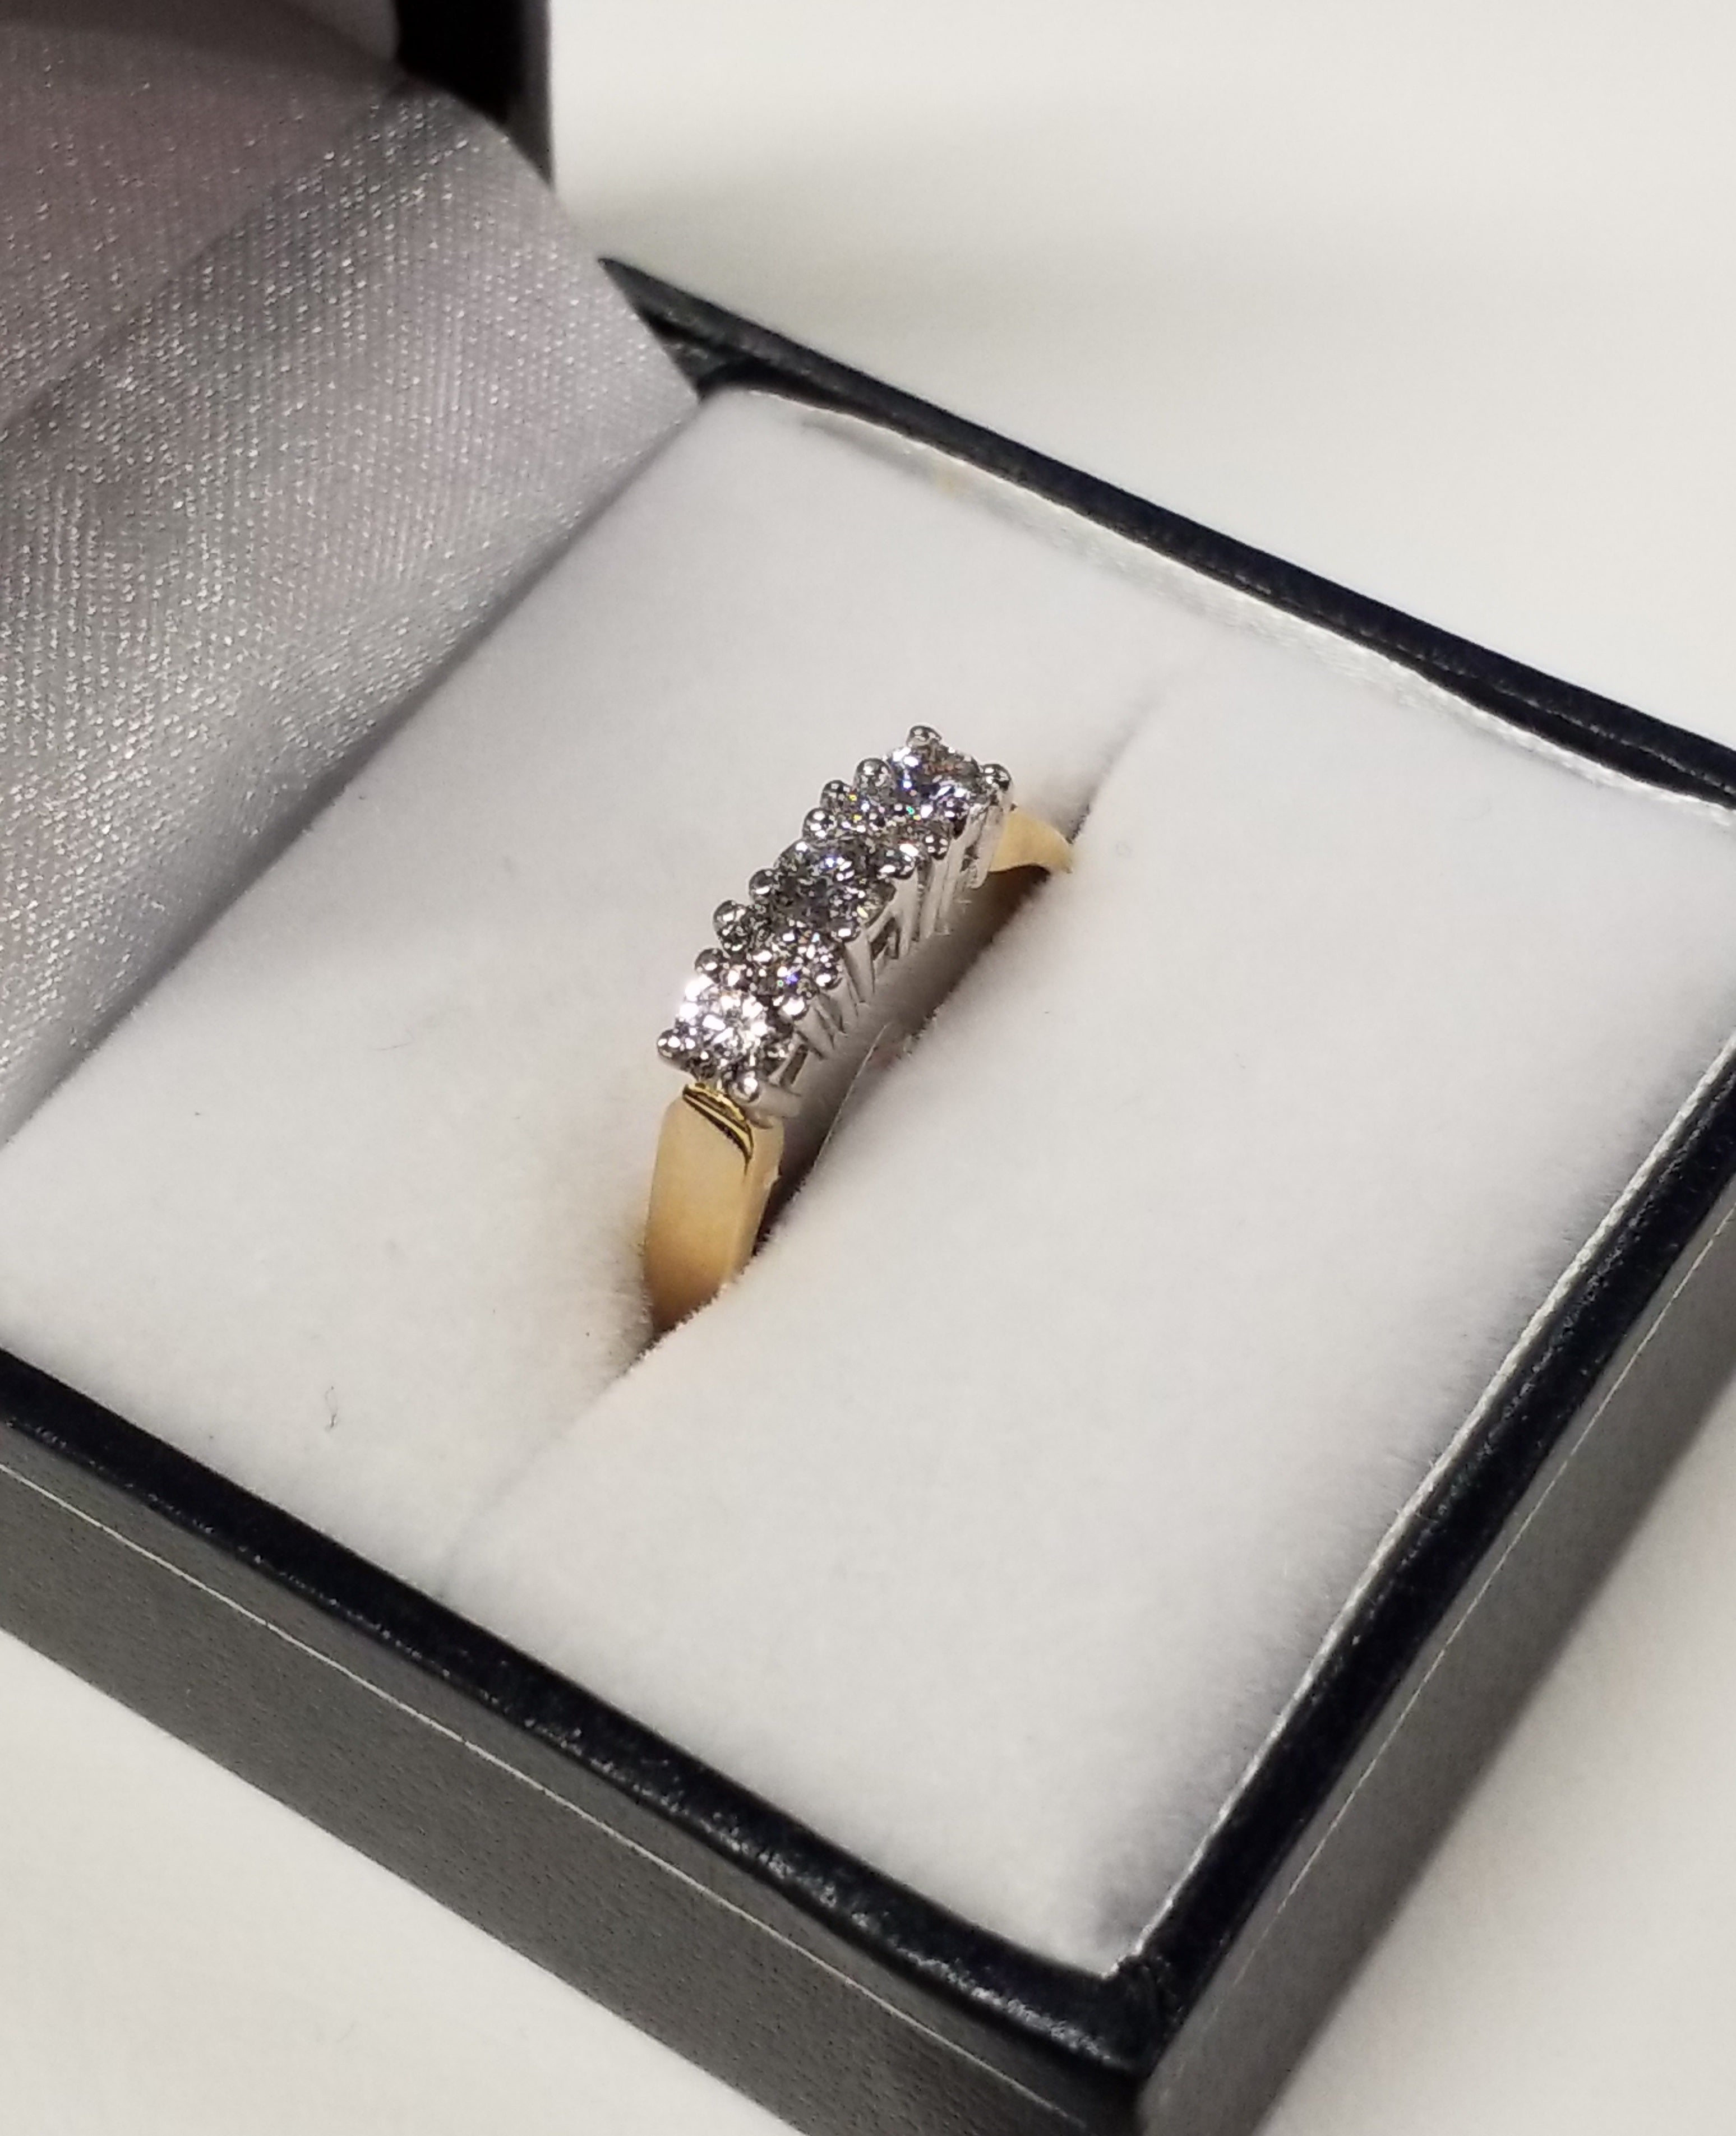 Diamond Anniversary Ring